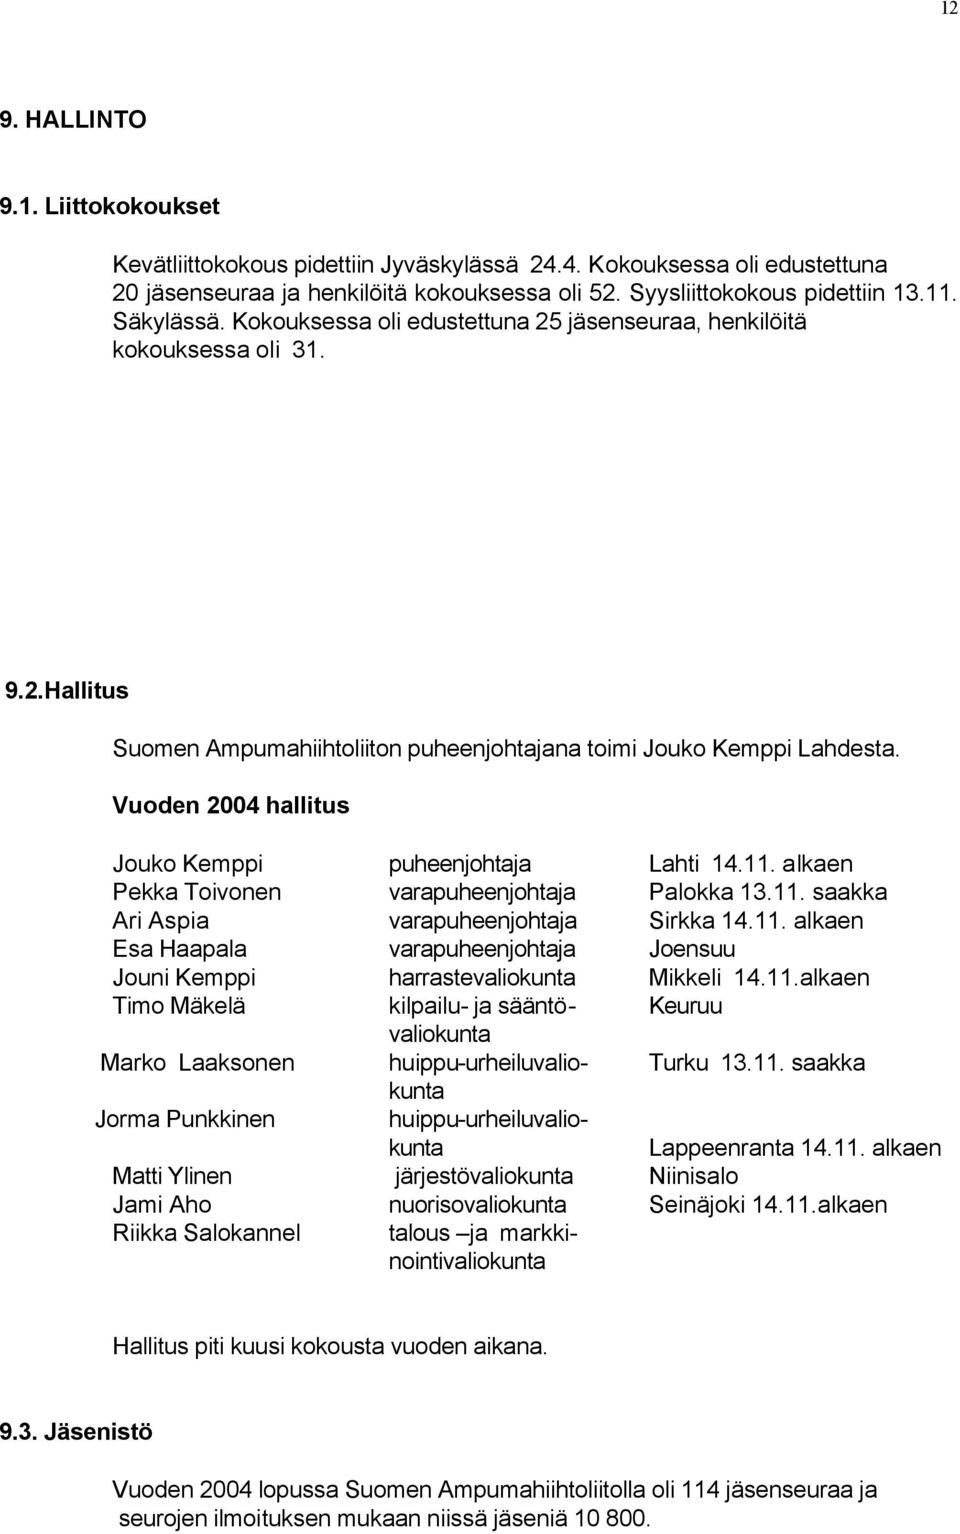 Vuoden 2004 hallitus Jouko Kemppi puheenjohtaja Lahti 14.11. alkaen Pekka Toivonen varapuheenjohtaja Palokka 13.11. saakka Ari Aspia varapuheenjohtaja Sirkka 14.11. alkaen Esa Haapala varapuheenjohtaja Joensuu Jouni Kemppi harrastevaliokunta Mikkeli 14.